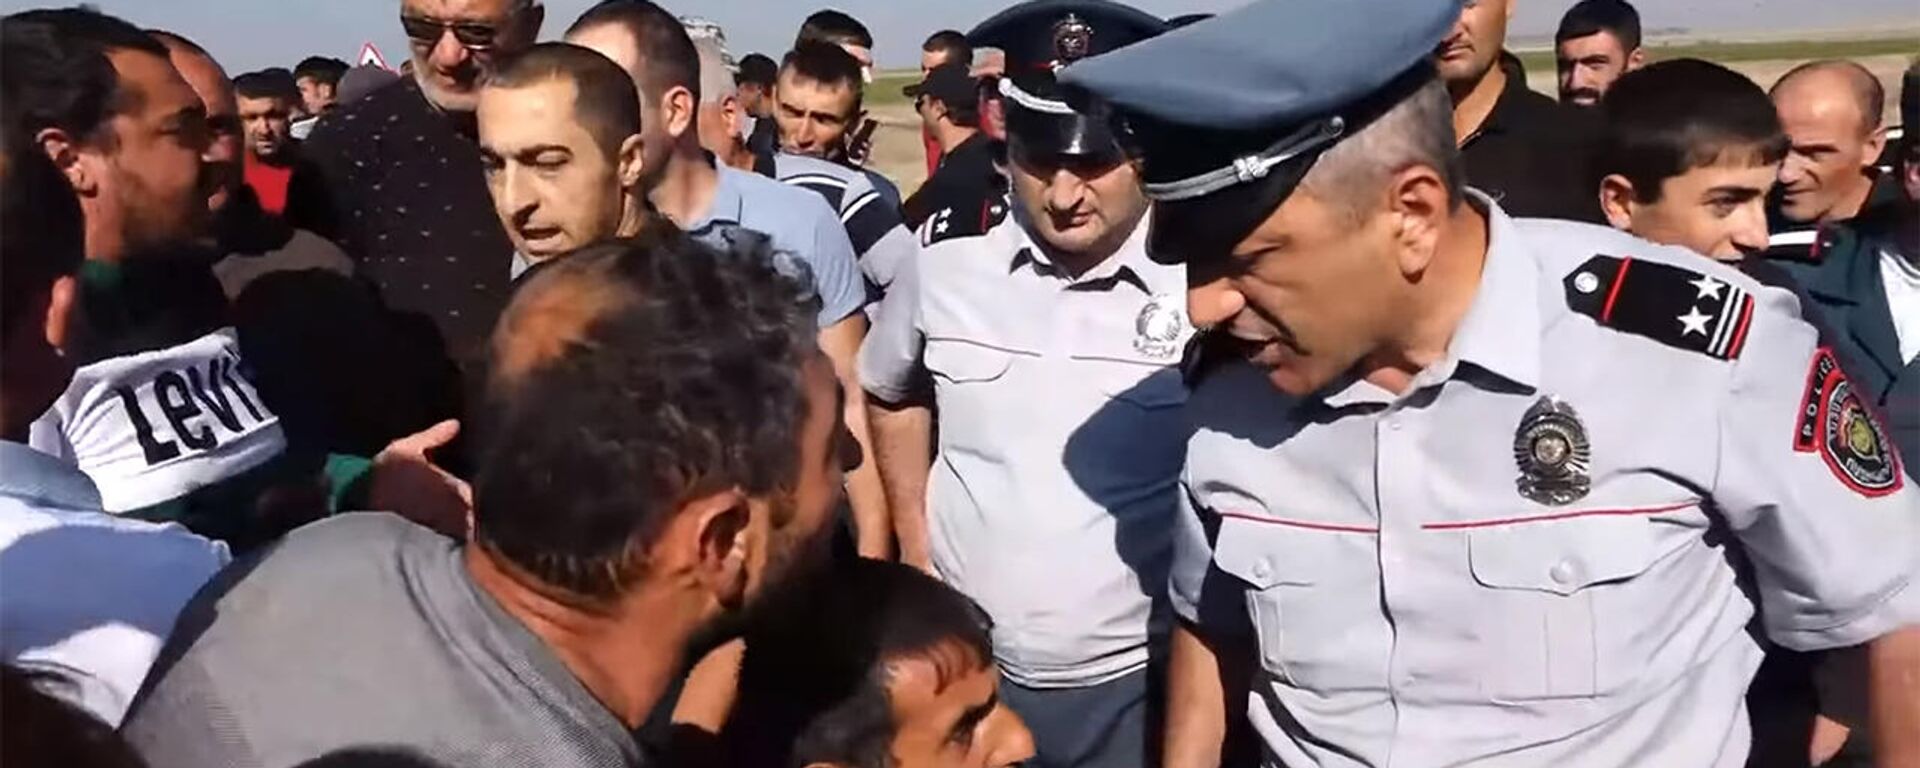 Потасовка между участниками протеста и полицией на автотрассе Сотк - Варденис  - Sputnik Армения, 1920, 16.09.2021